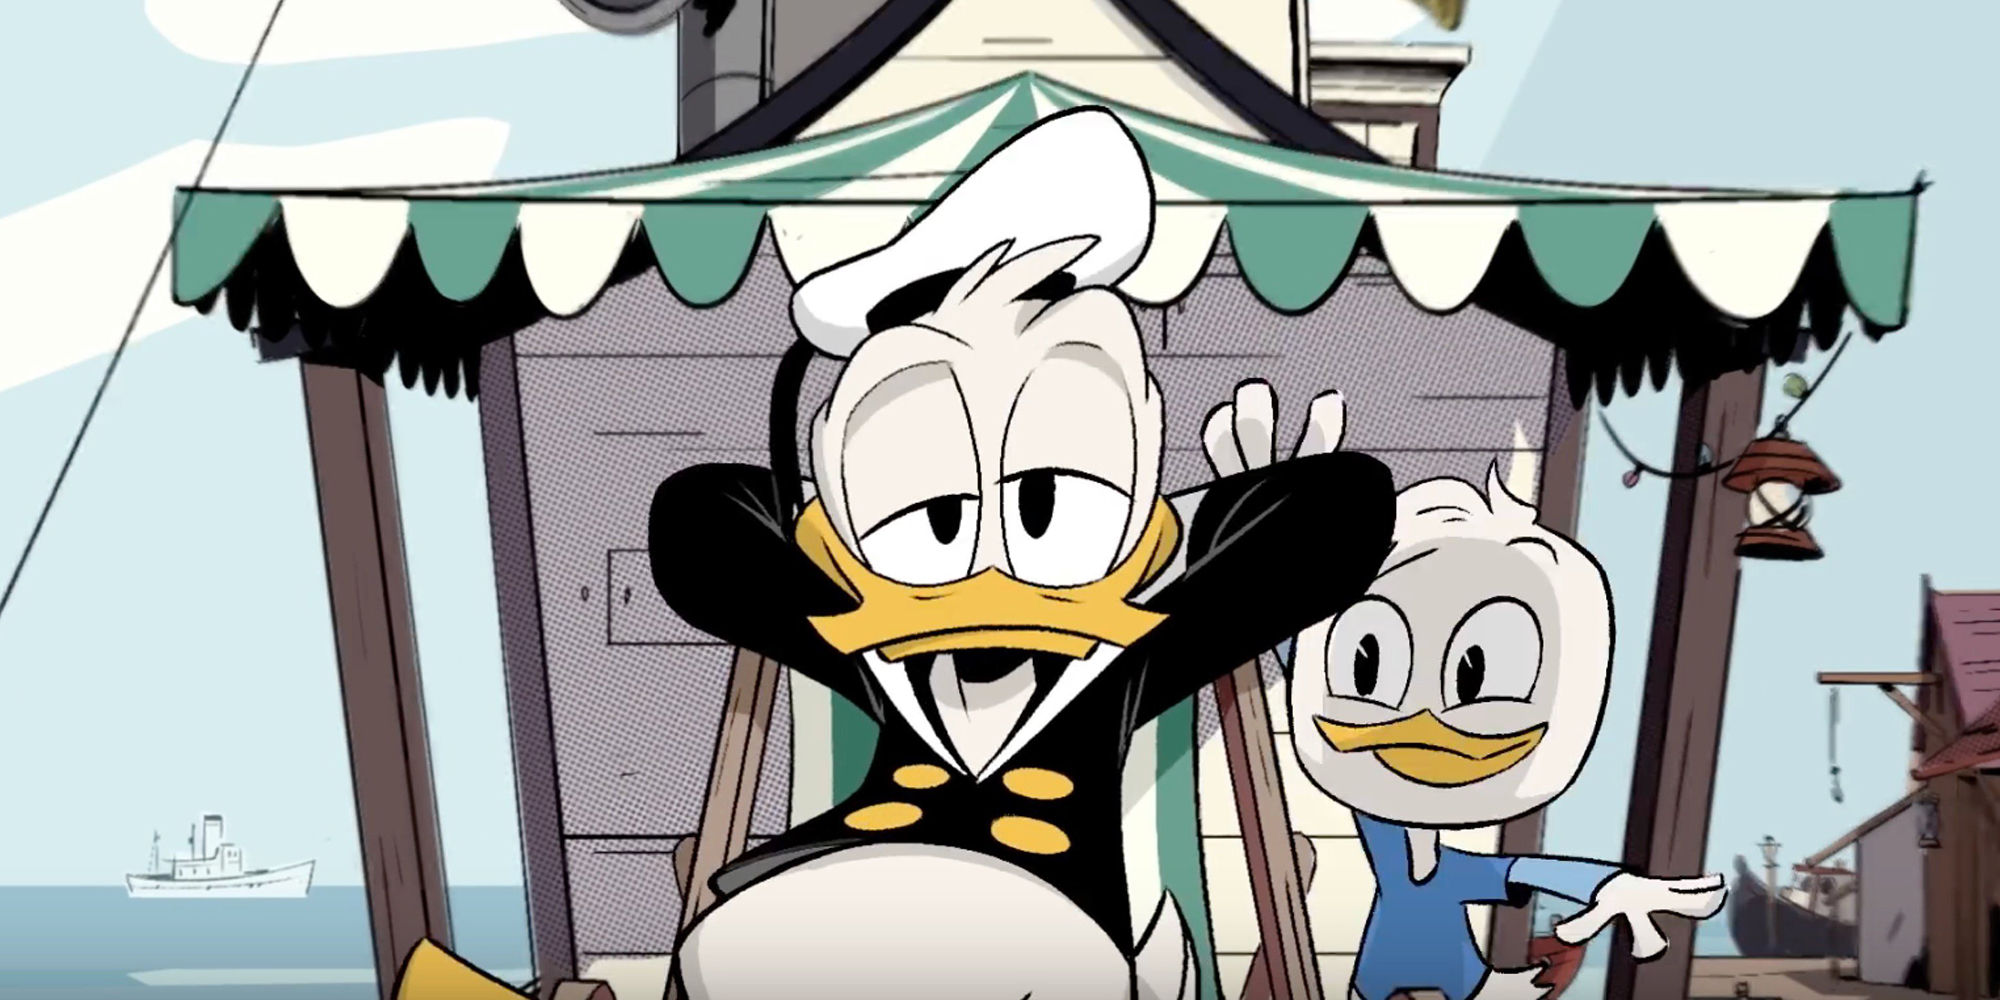  Le plein d’extraits pour la série Ducktales de Disney XD